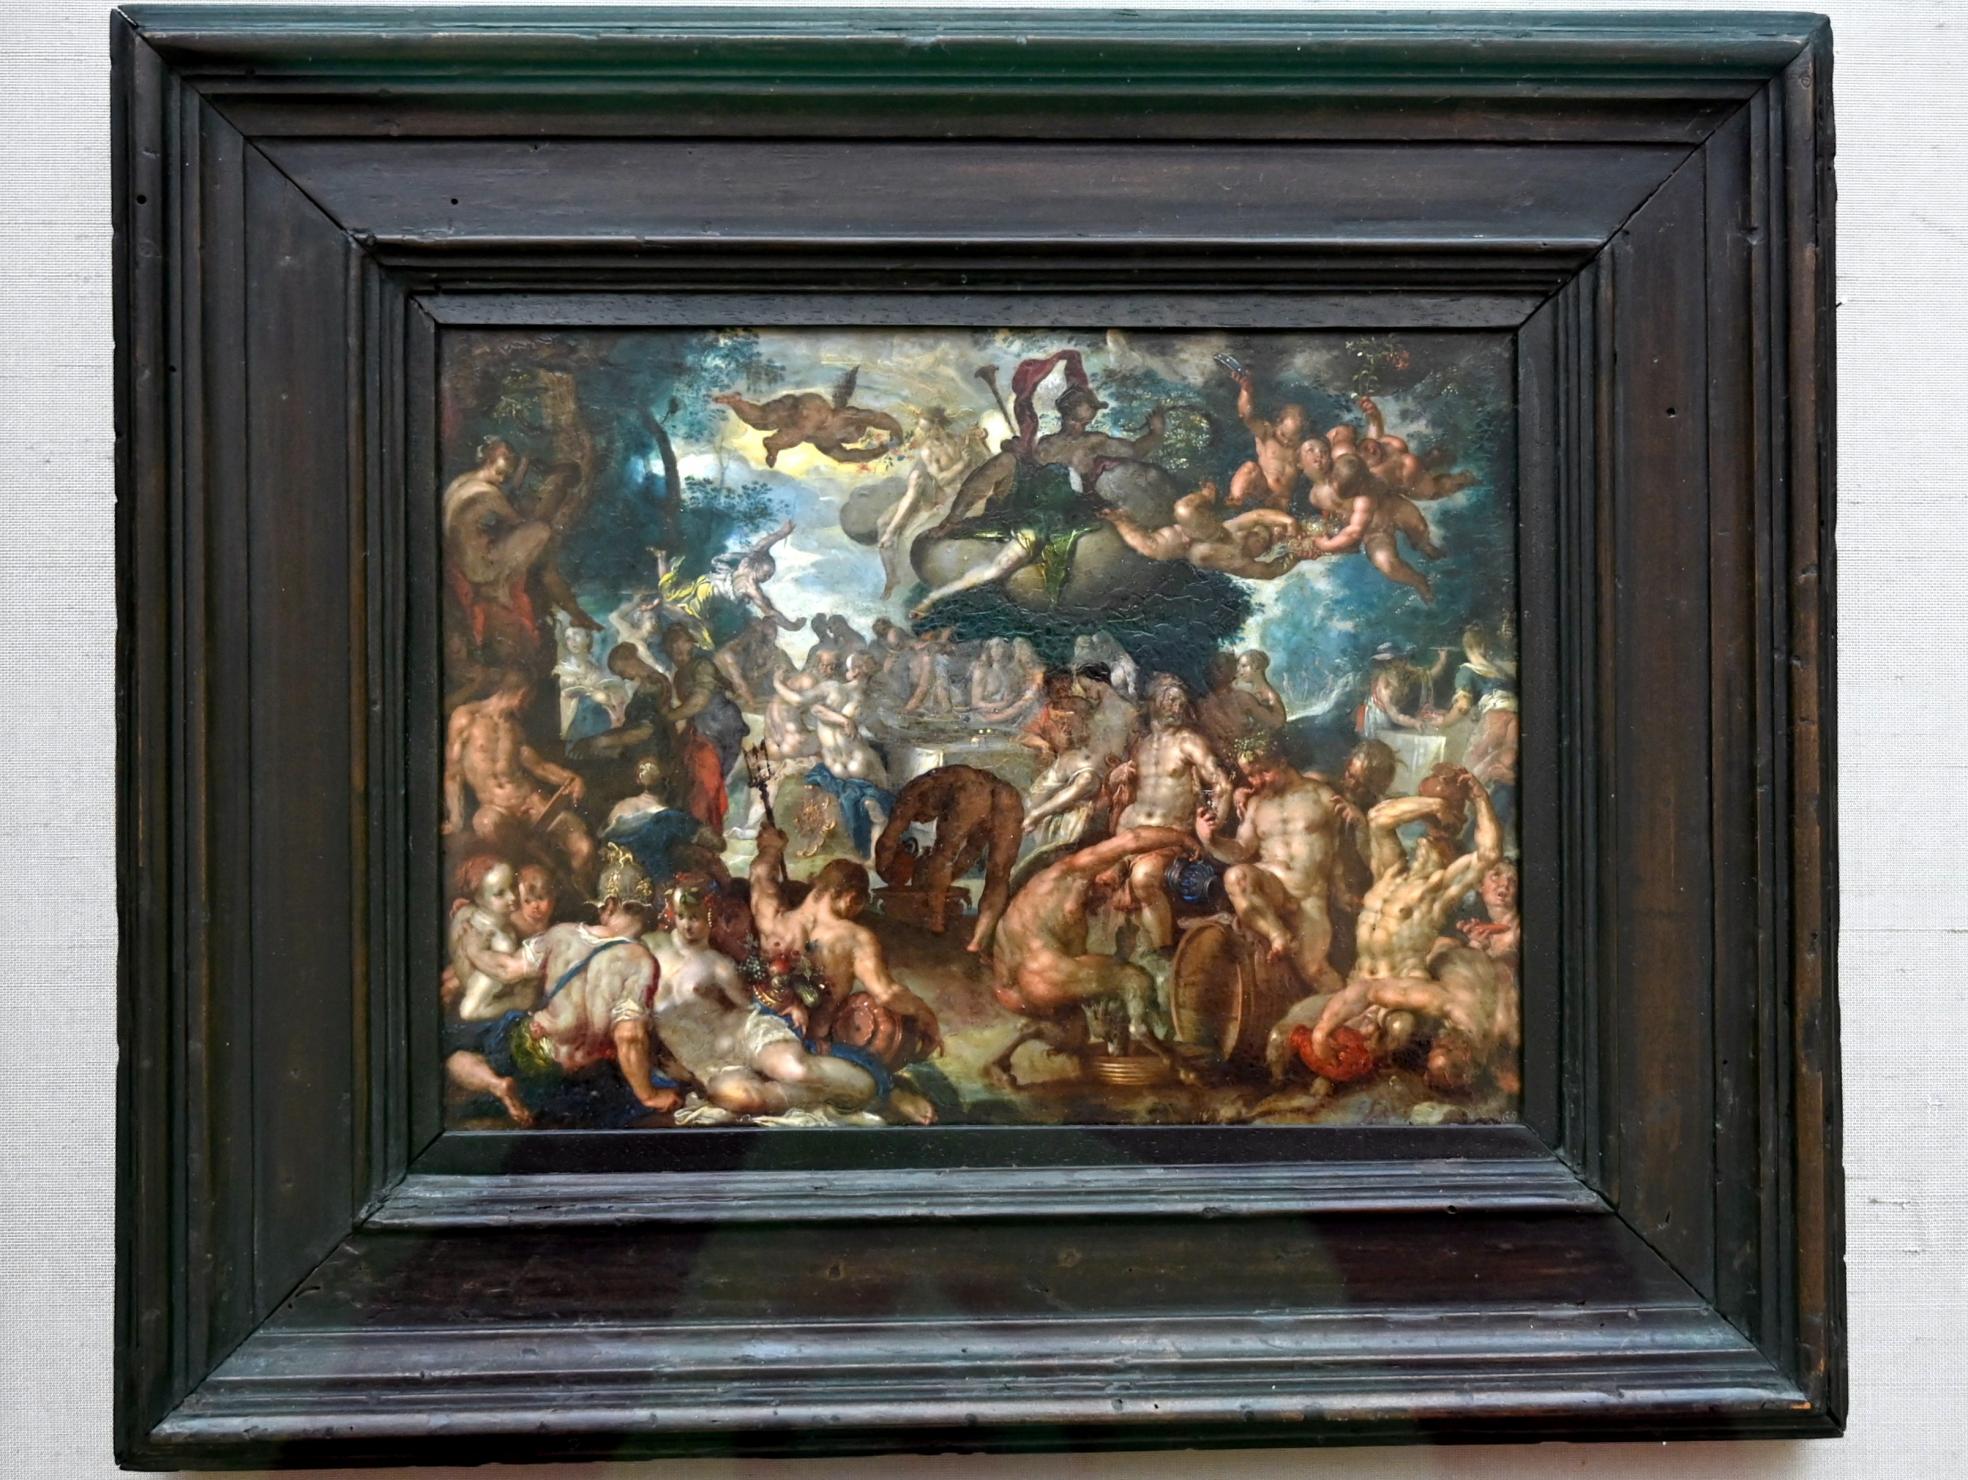 Joachim Anthonisz. Wtewael (1595–1615), Die Hochzeit von Peleus und Thetis, München, Alte Pinakothek, Obergeschoss Kabinett 13, um 1592–1600